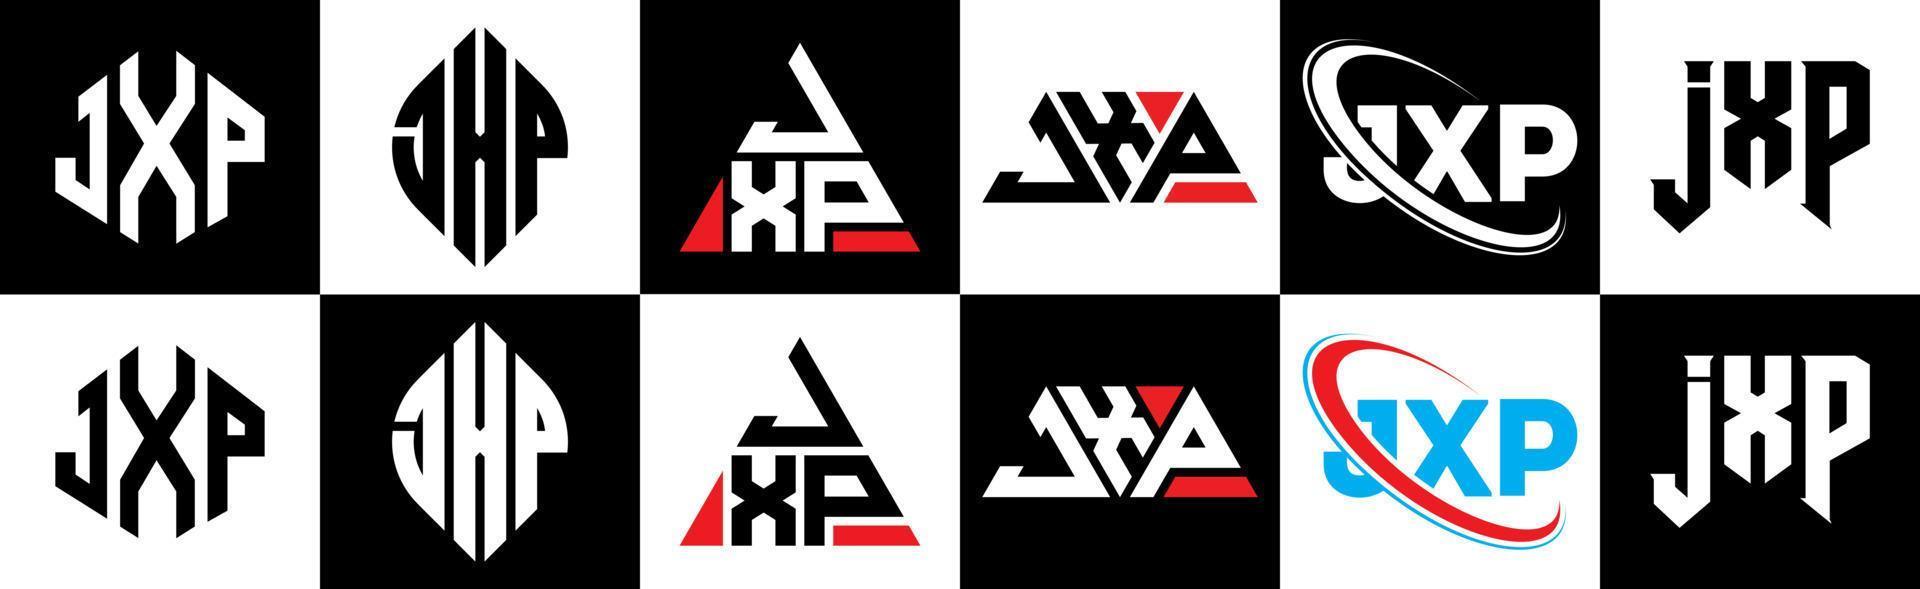 Diseño de logotipo de letra jxp en seis estilos. jxp polígono, círculo, triángulo, hexágono, estilo plano y simple con logotipo de letra de variación de color blanco y negro en una mesa de trabajo. logotipo minimalista y clásico de jxp vector